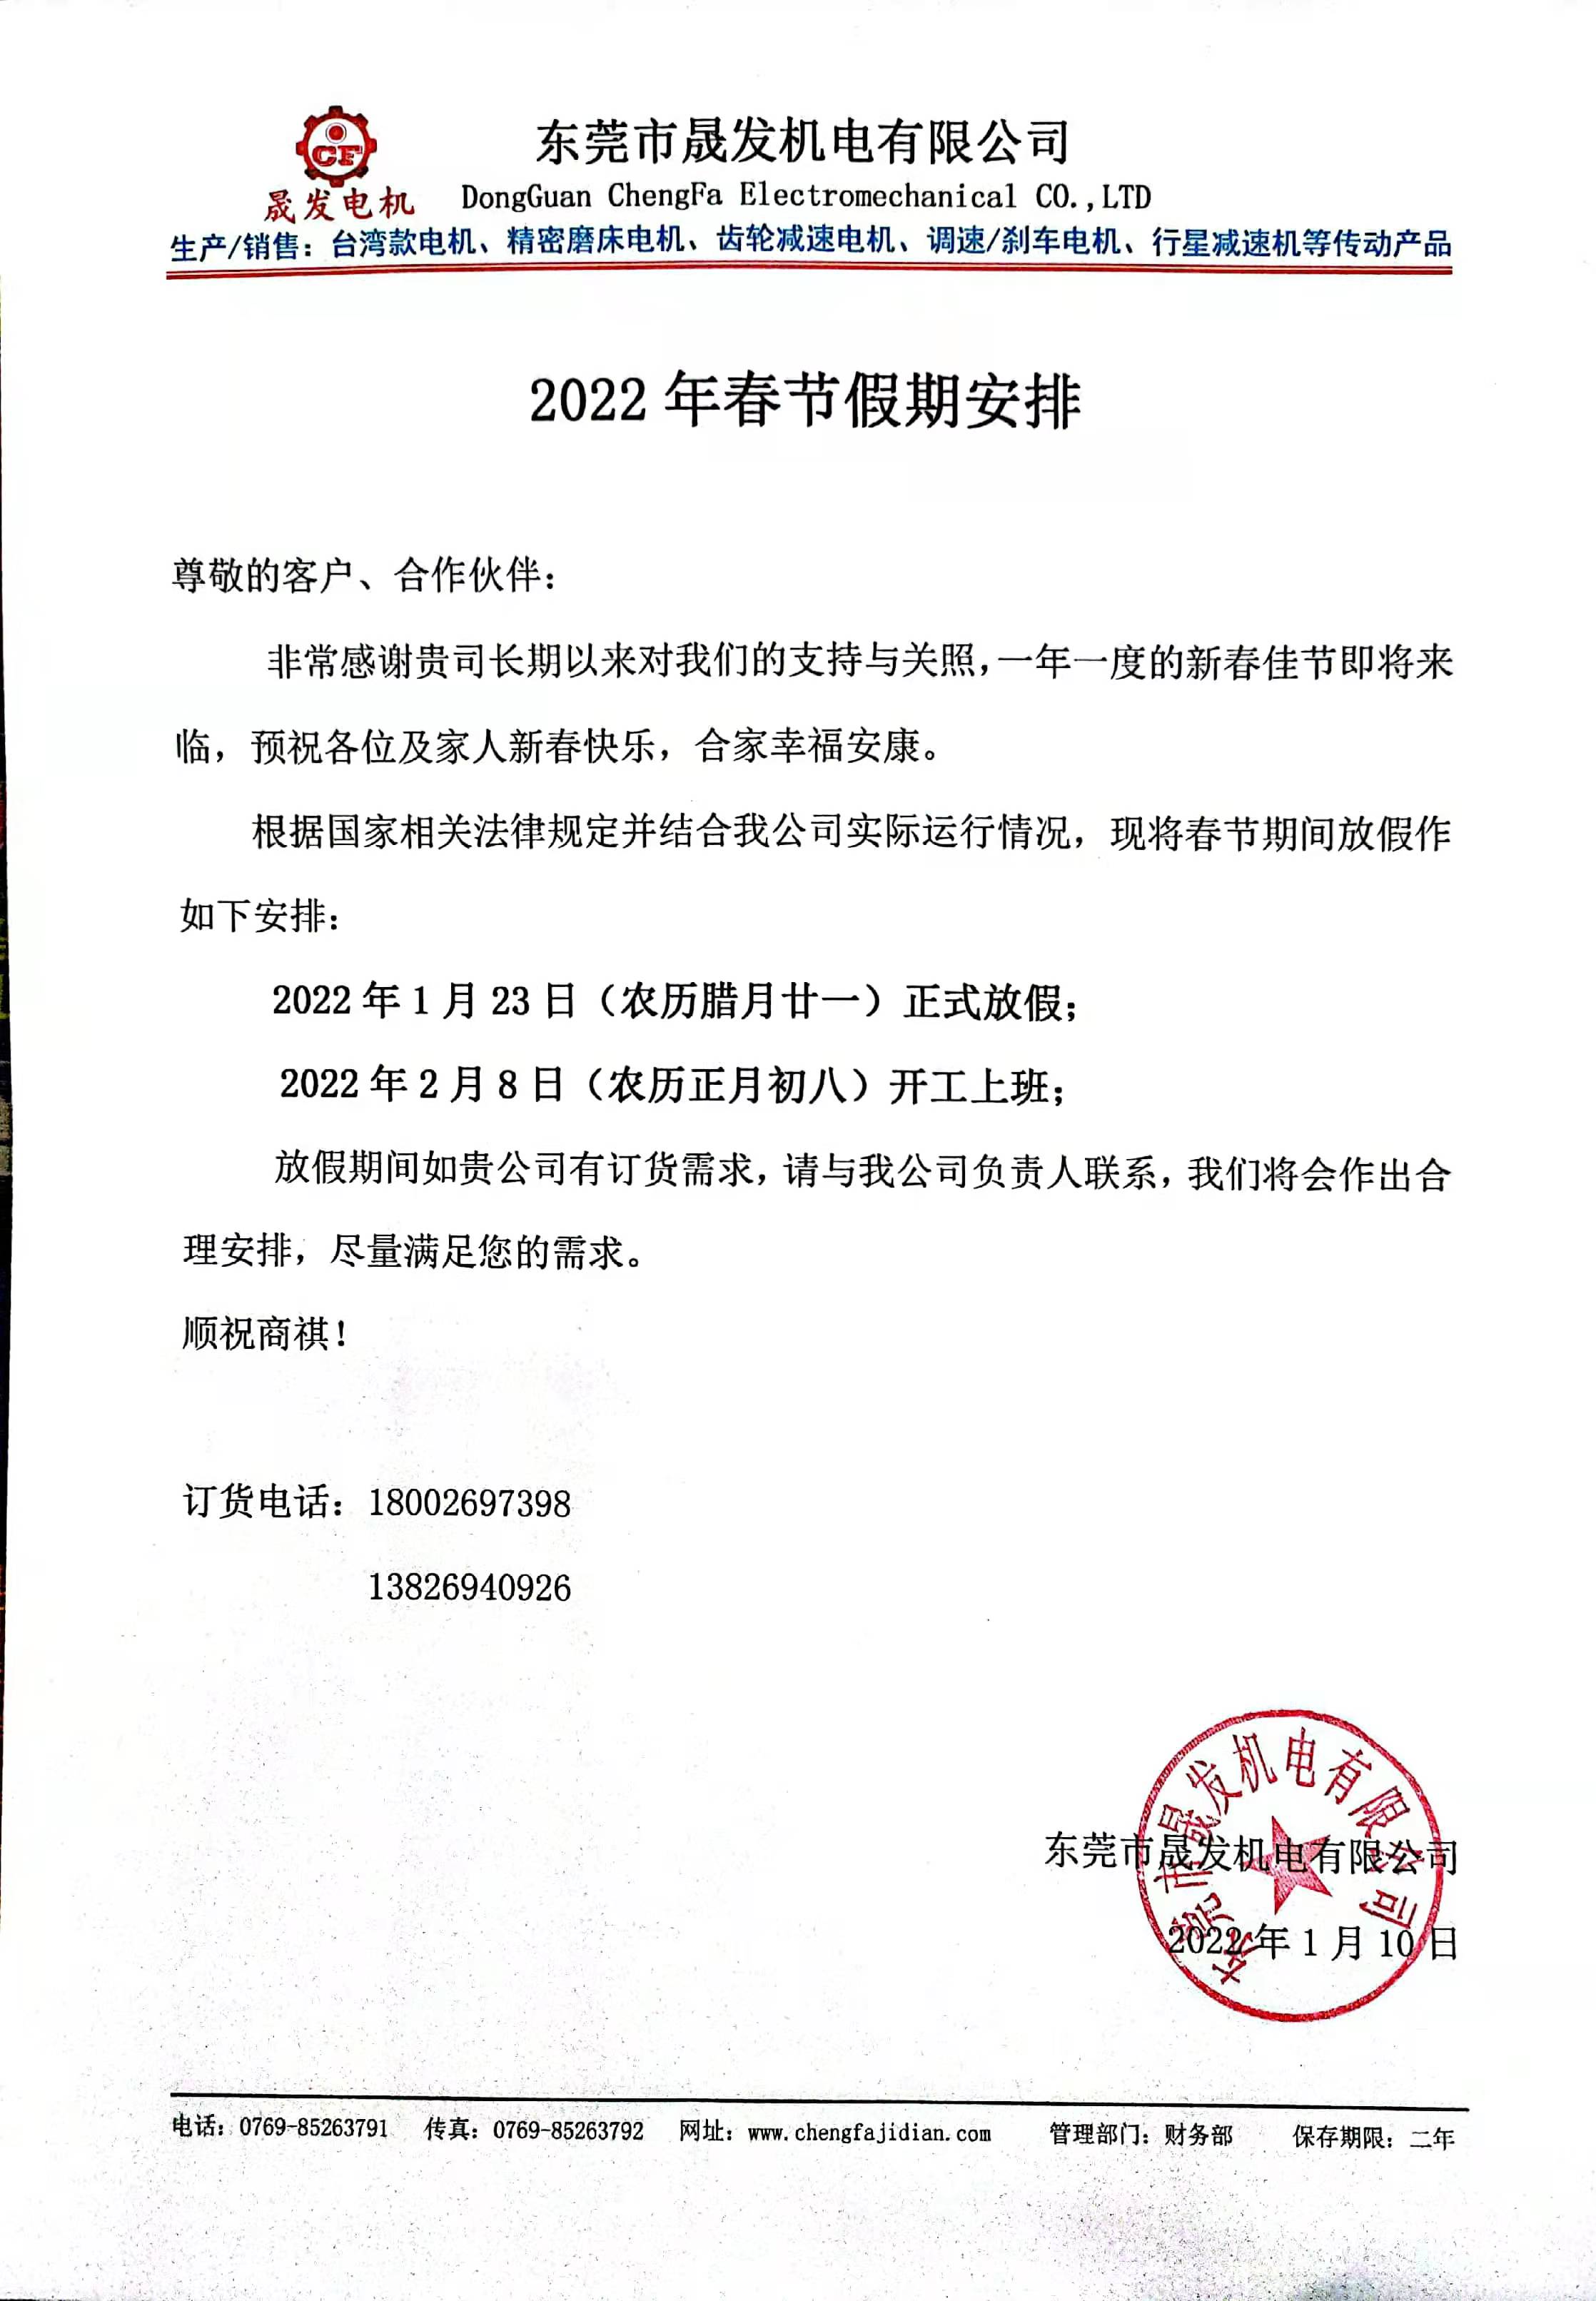 2022年春节假期安排